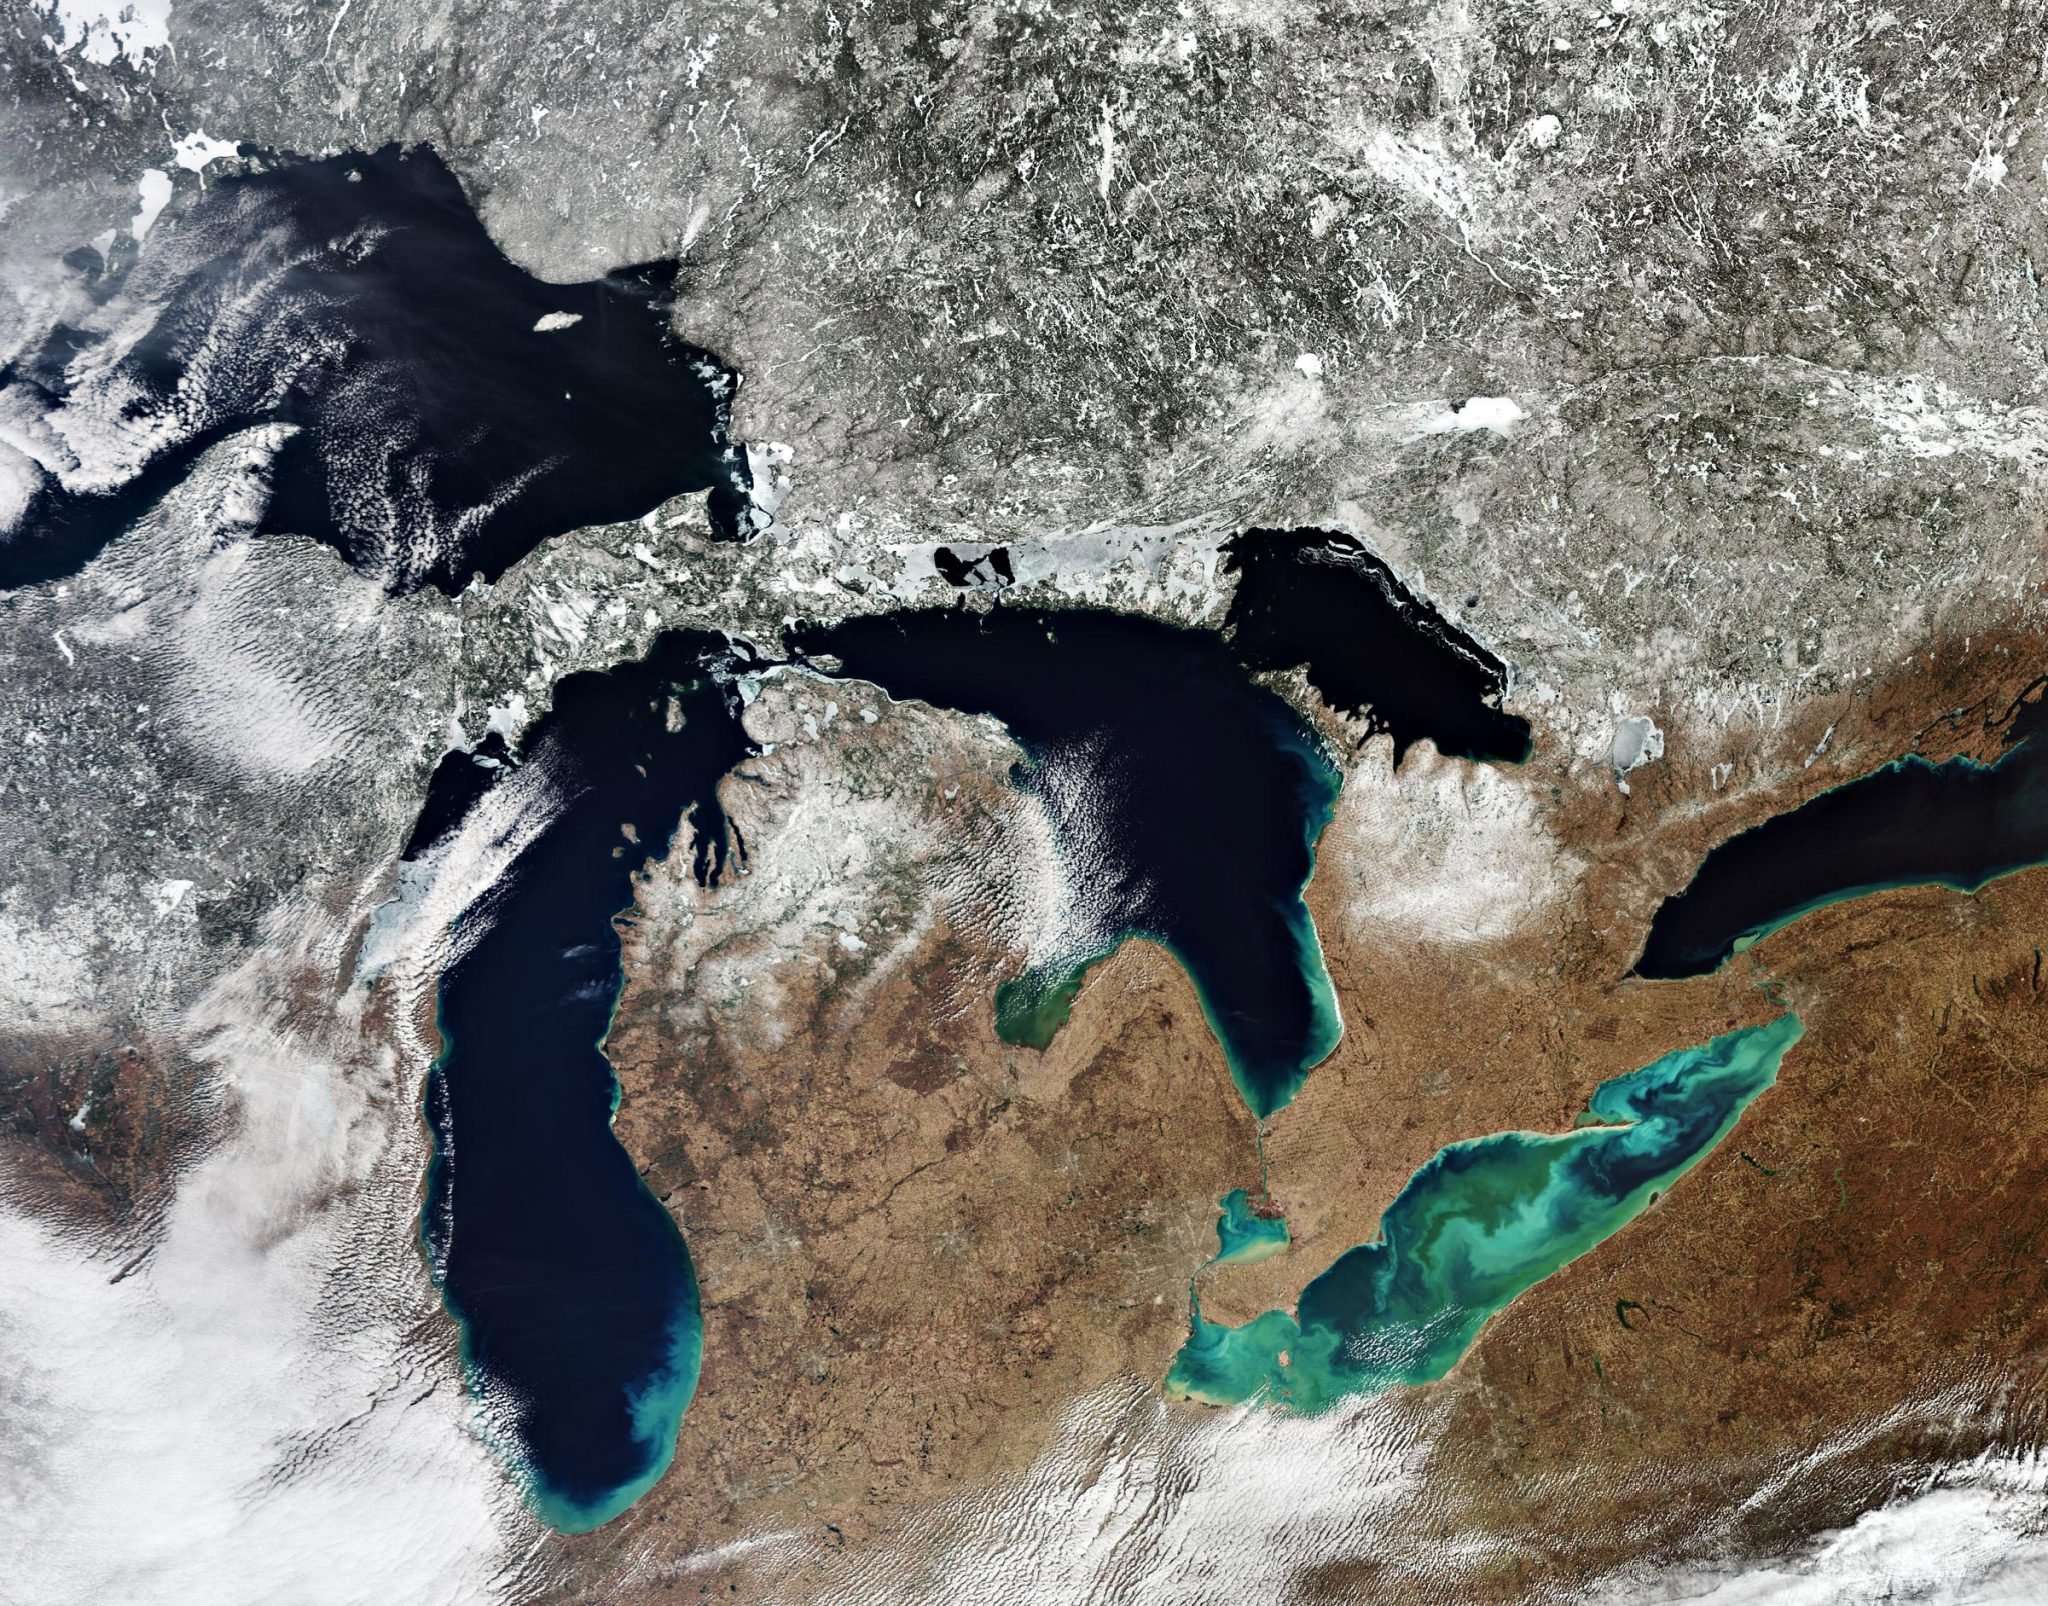 The great Lakes Канада. Озеро Мичиган из космоса. Озеро Мичиган вид из космоса. 5 Великих озер Северной Америки. Самое восточное из великих озер 7